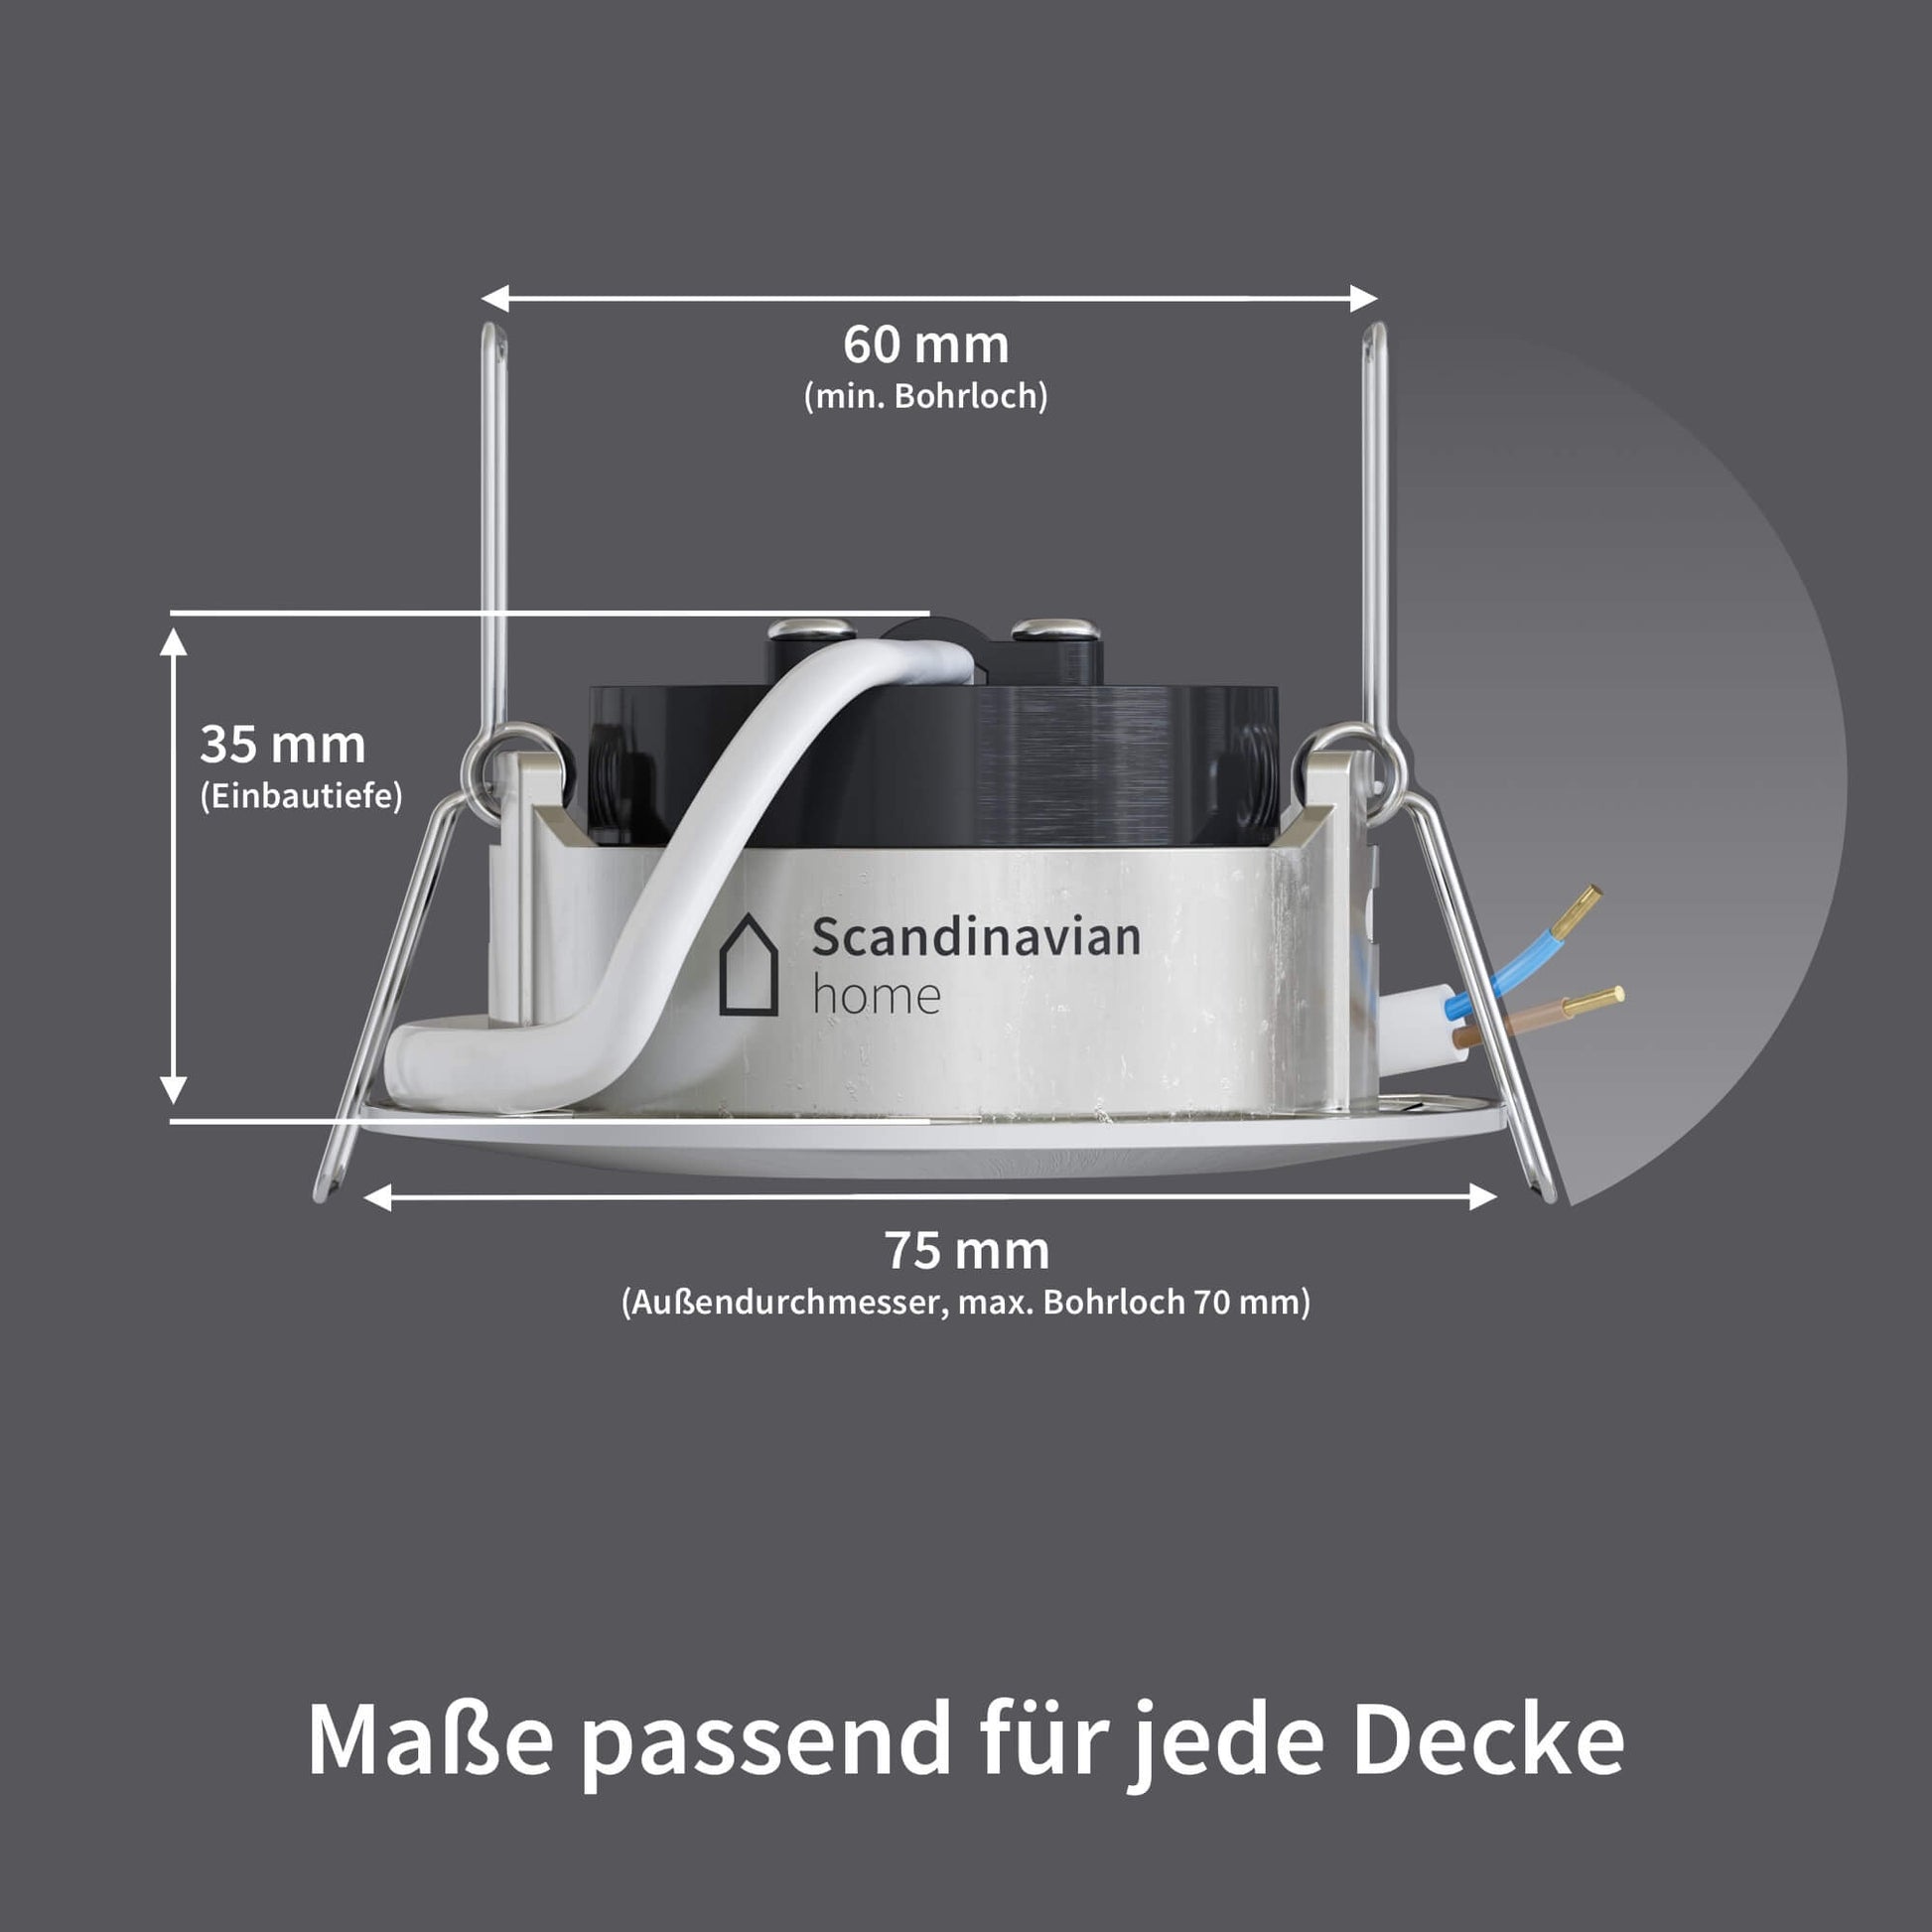 LED Einbaustrahler (WarmDim) home – I Edelstahldesign Scandinavian Dimmbar DN-Serie